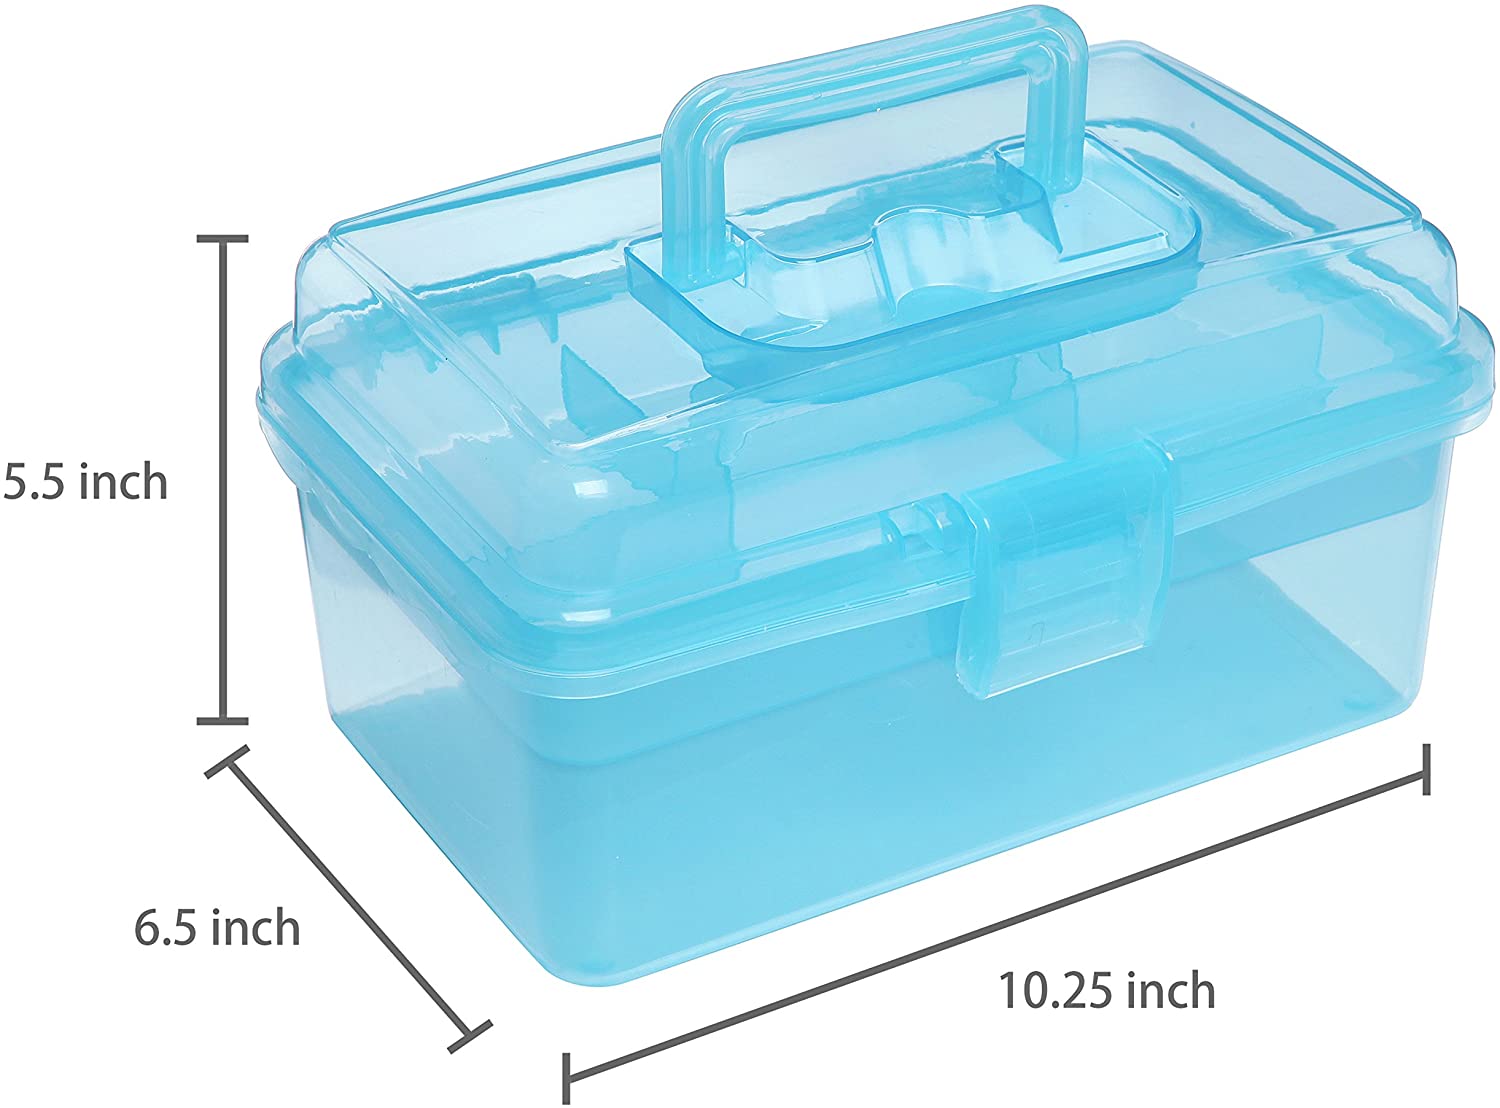 Tragbarer durchsichtiger Erste-Hilfe-Kasten aus Kunststoff mit Griff